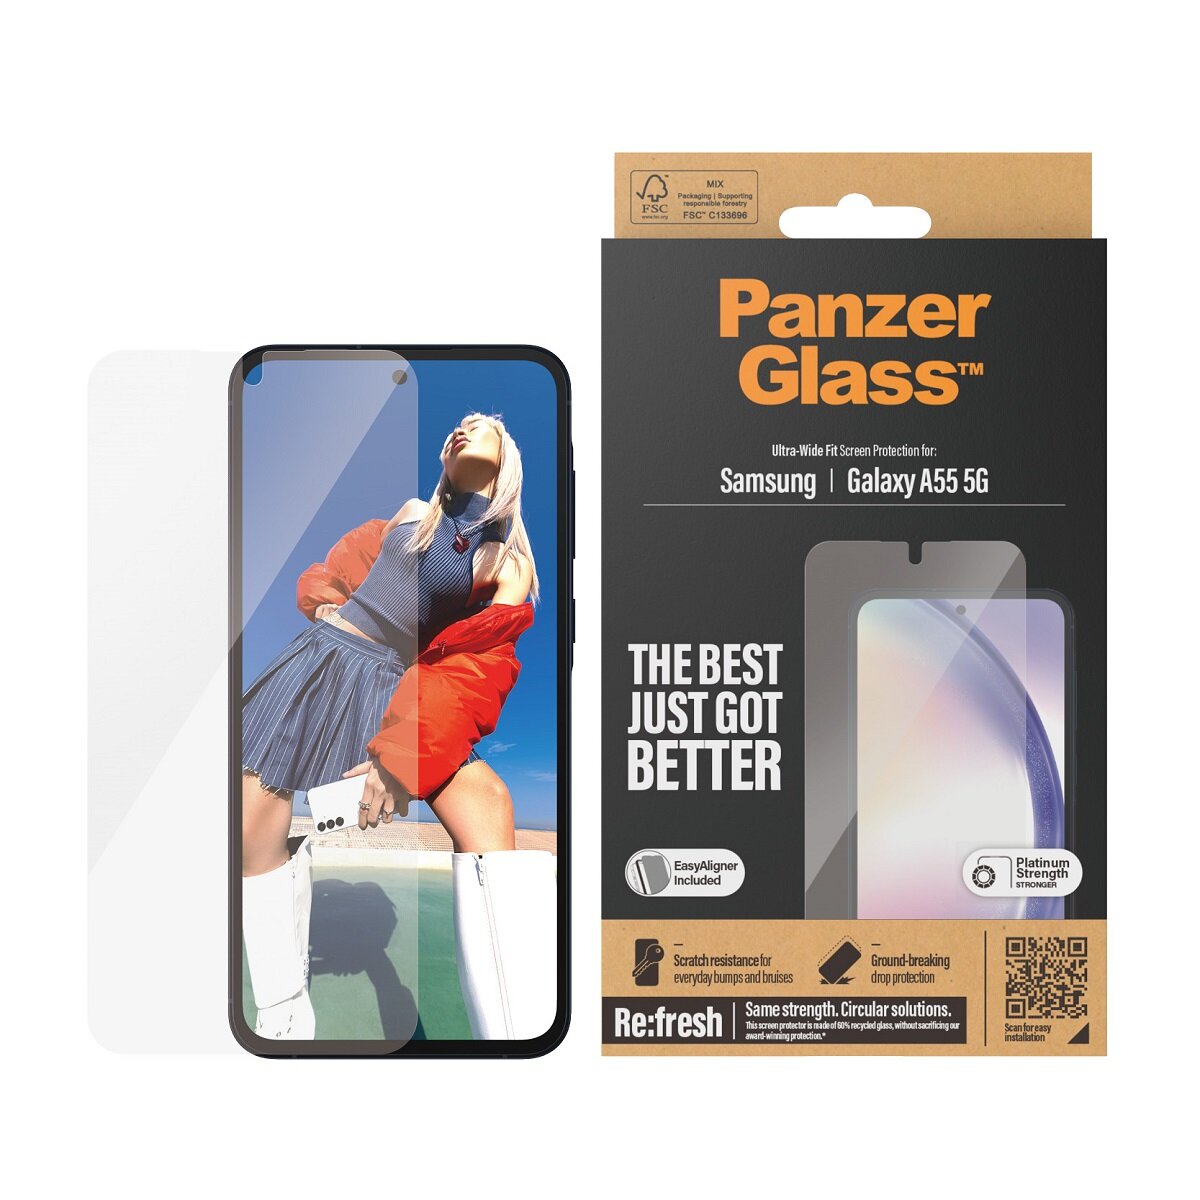 Szkło ochronne PanzerGlass Ultra-Wide Fit Galaxy A55 5G wraz z telefonem oraz opakowanie od frontu